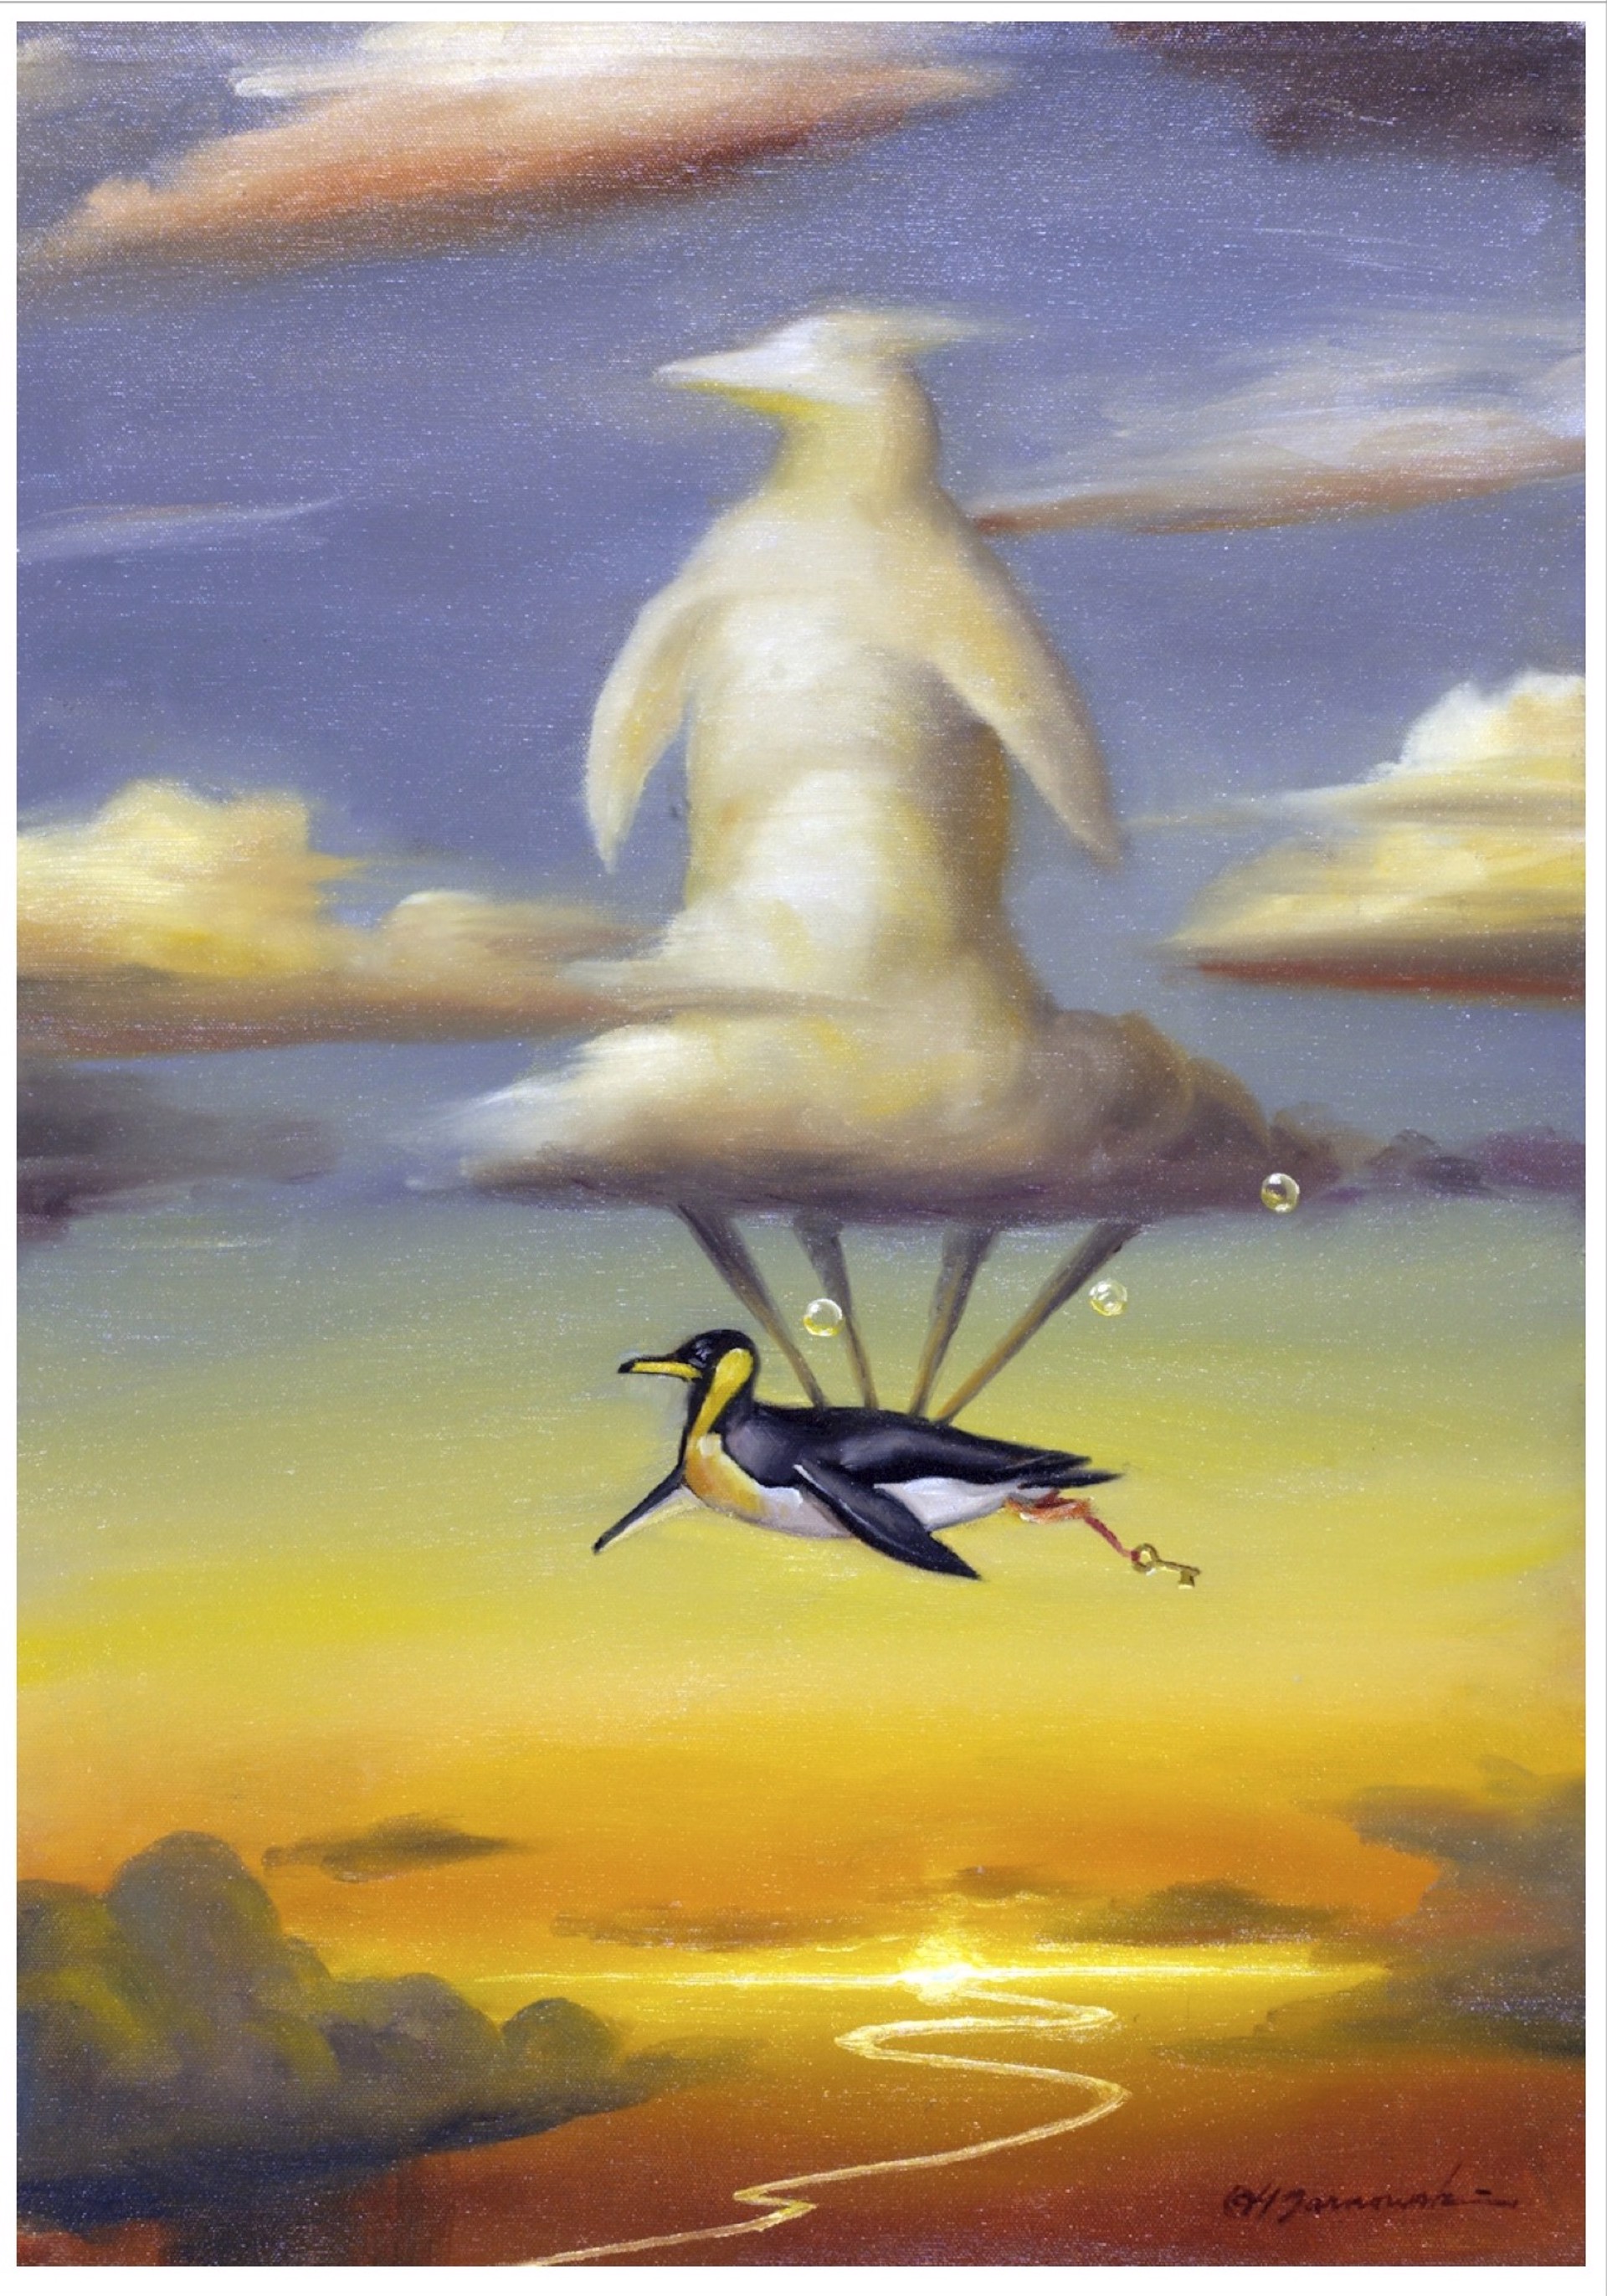 Flying High by Glen Tarnowski